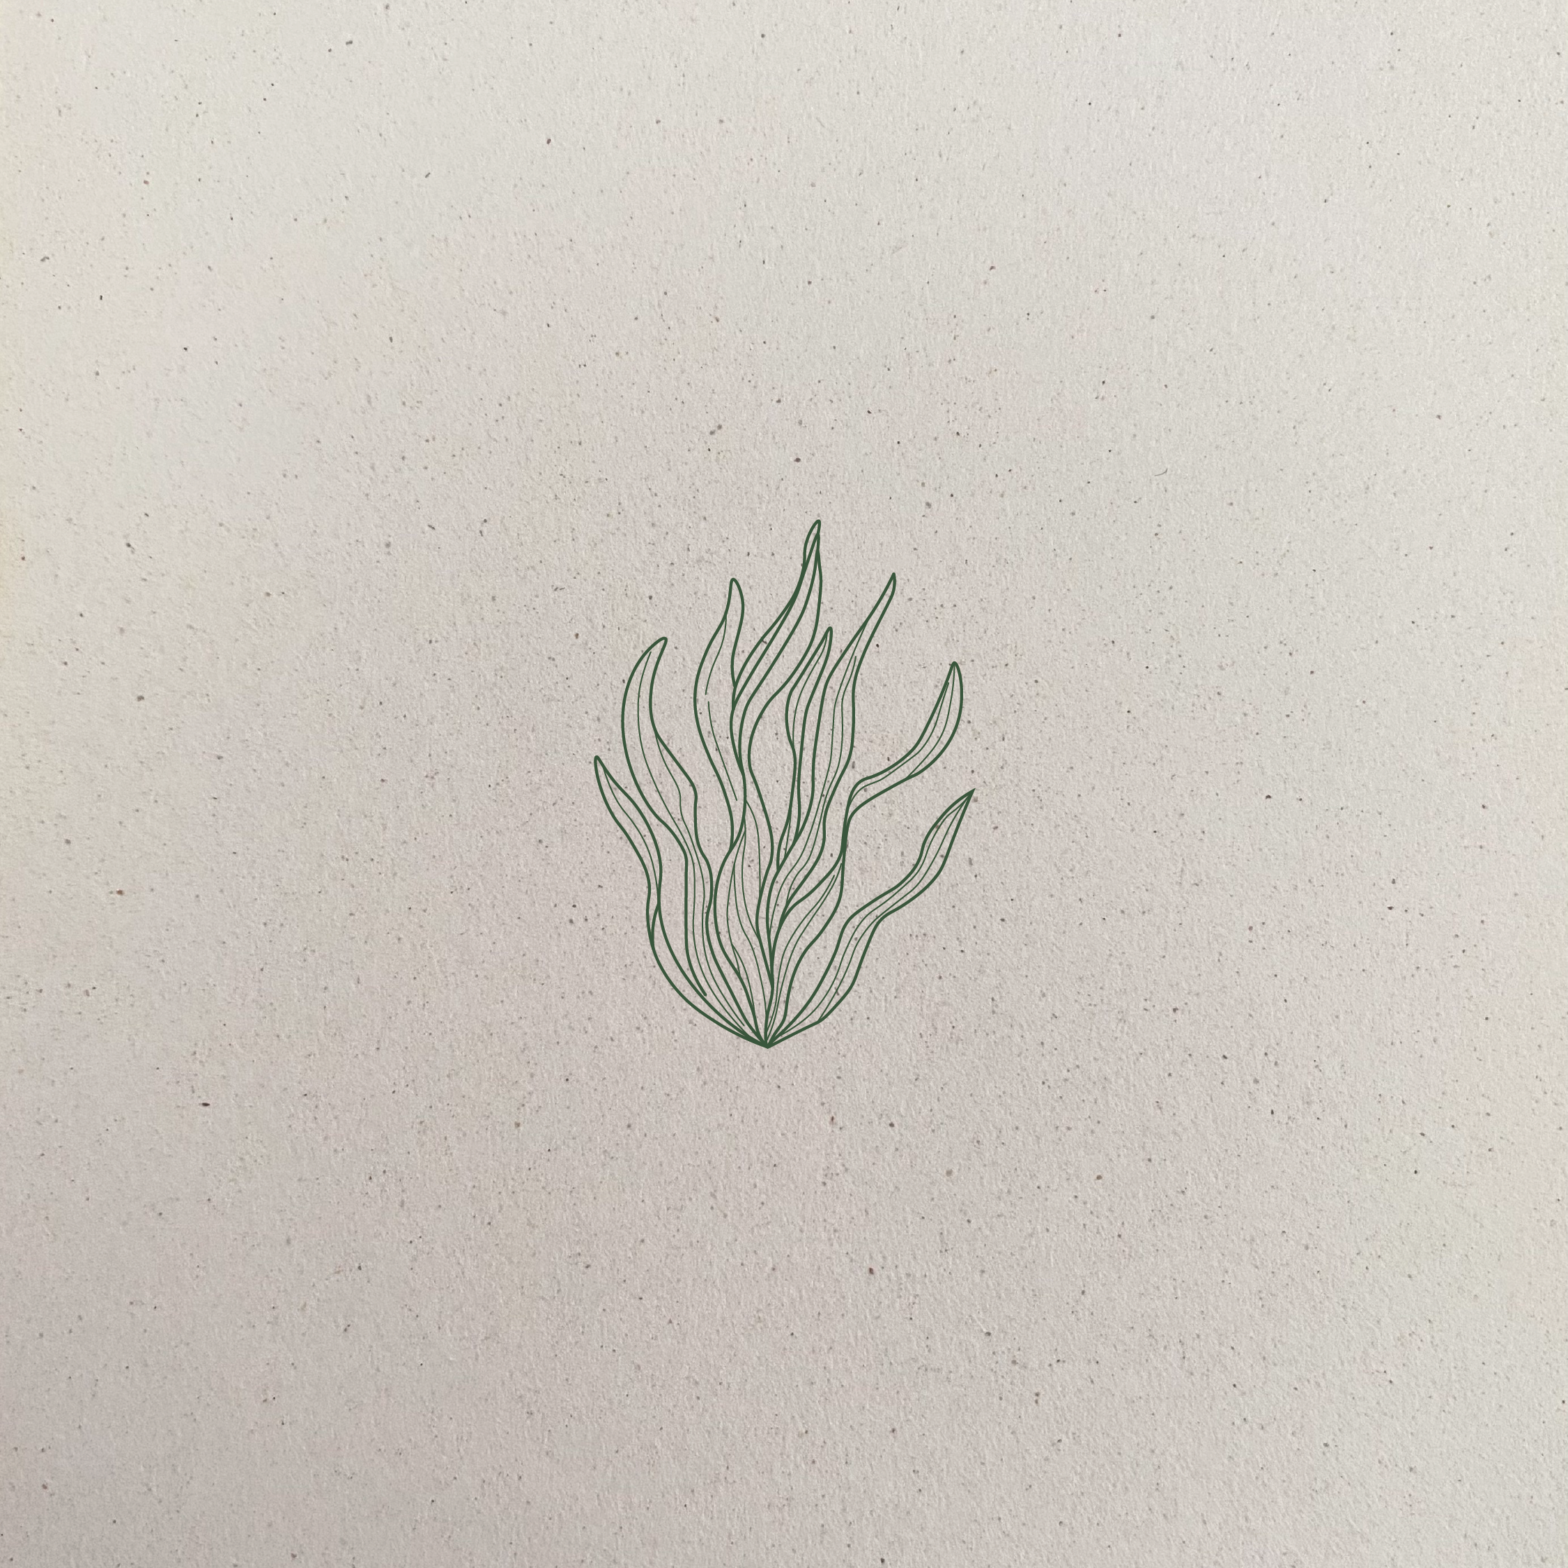 Papier créer à partir d'algues